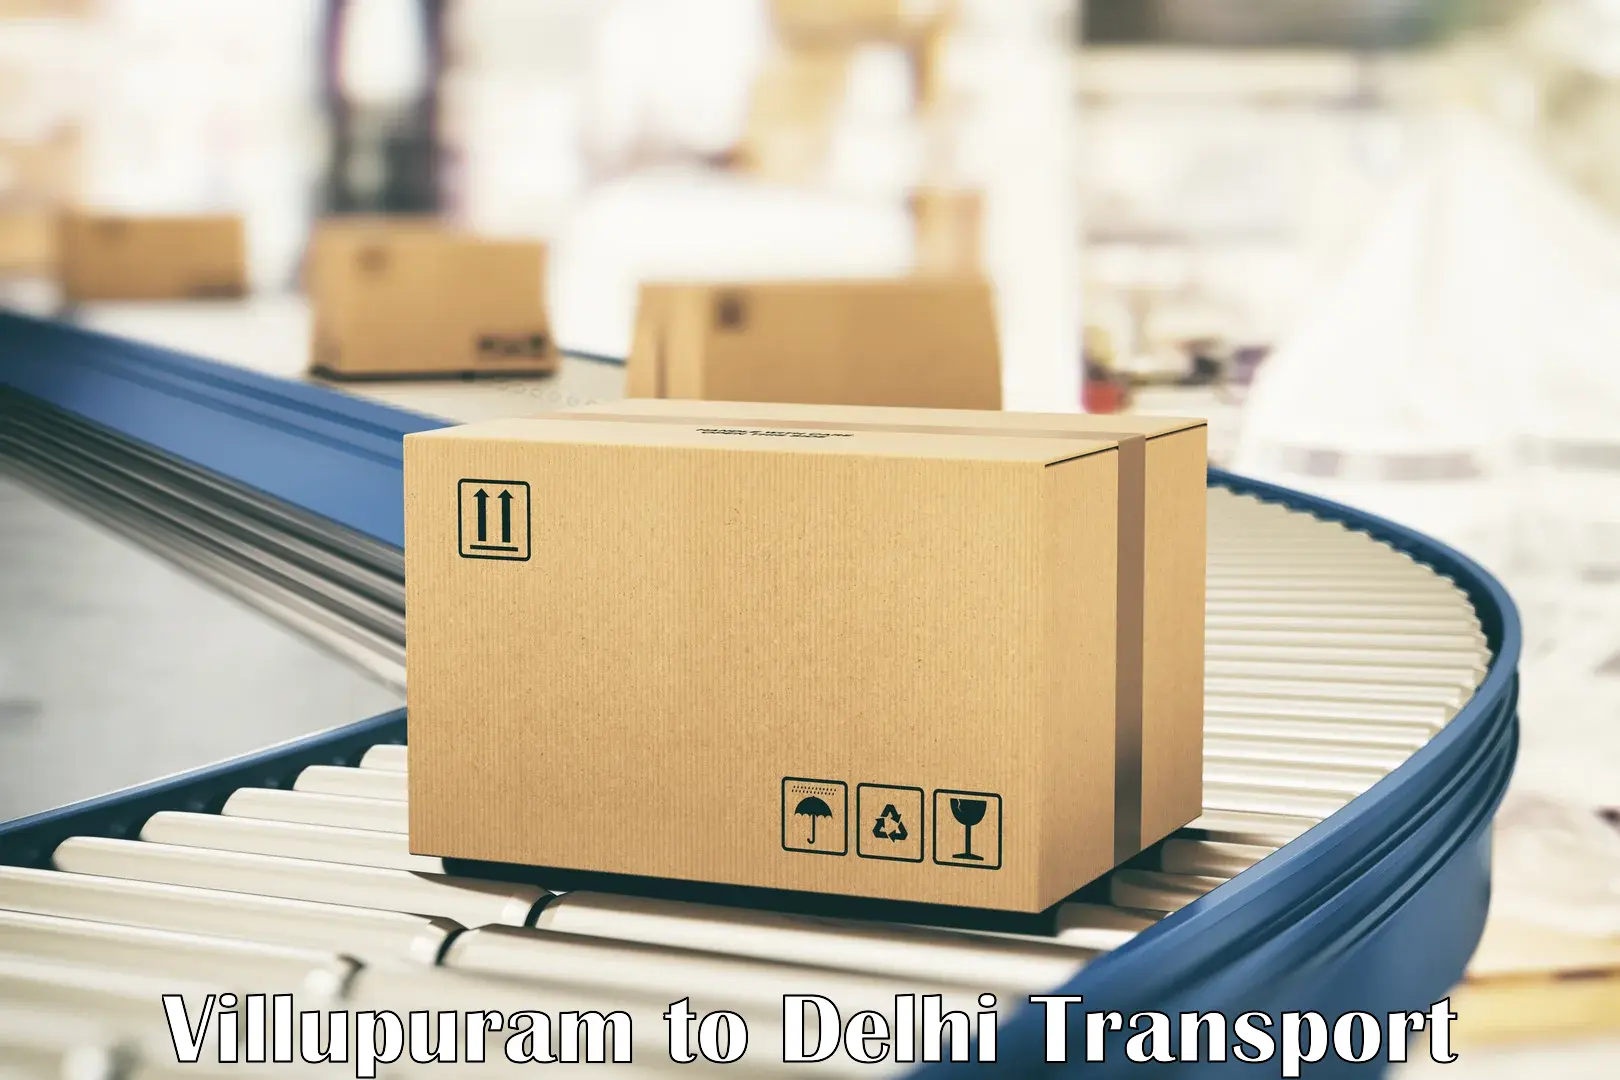 Nearest transport service in Villupuram to Delhi